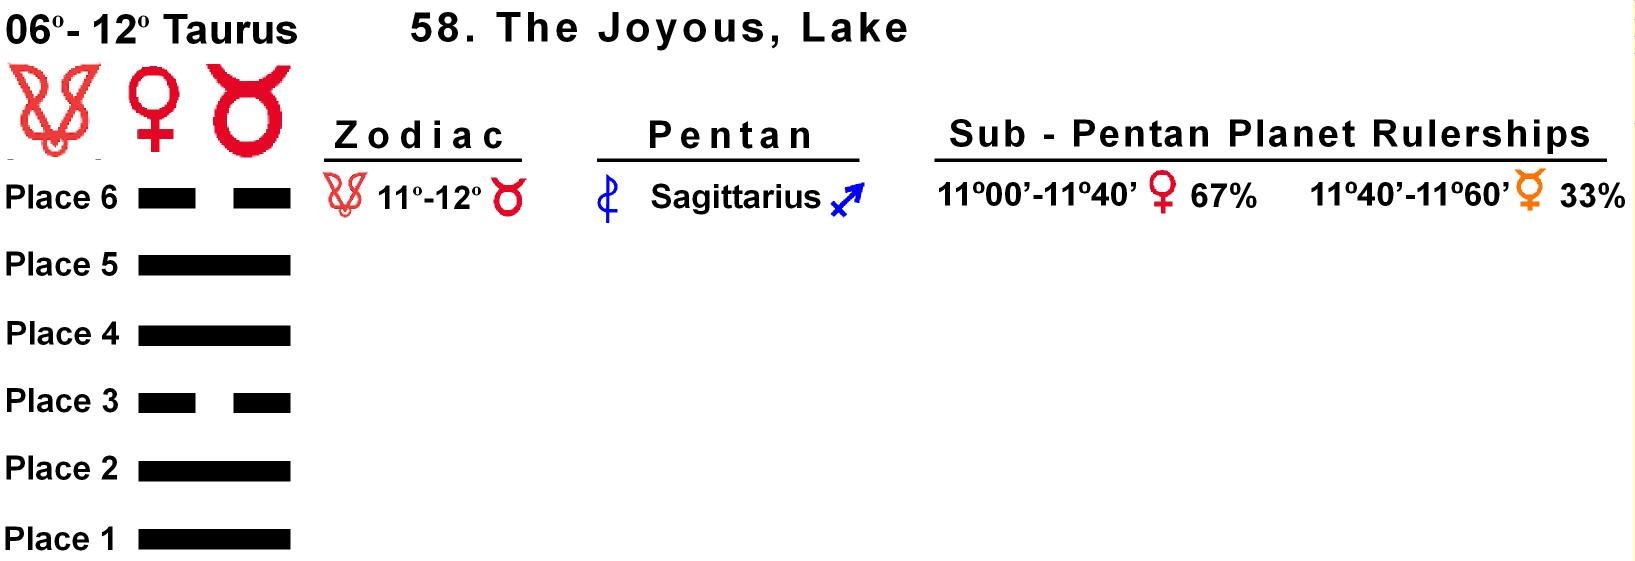 Pent-lines-02TA 11-12 Hx-58 The Joyous Lake